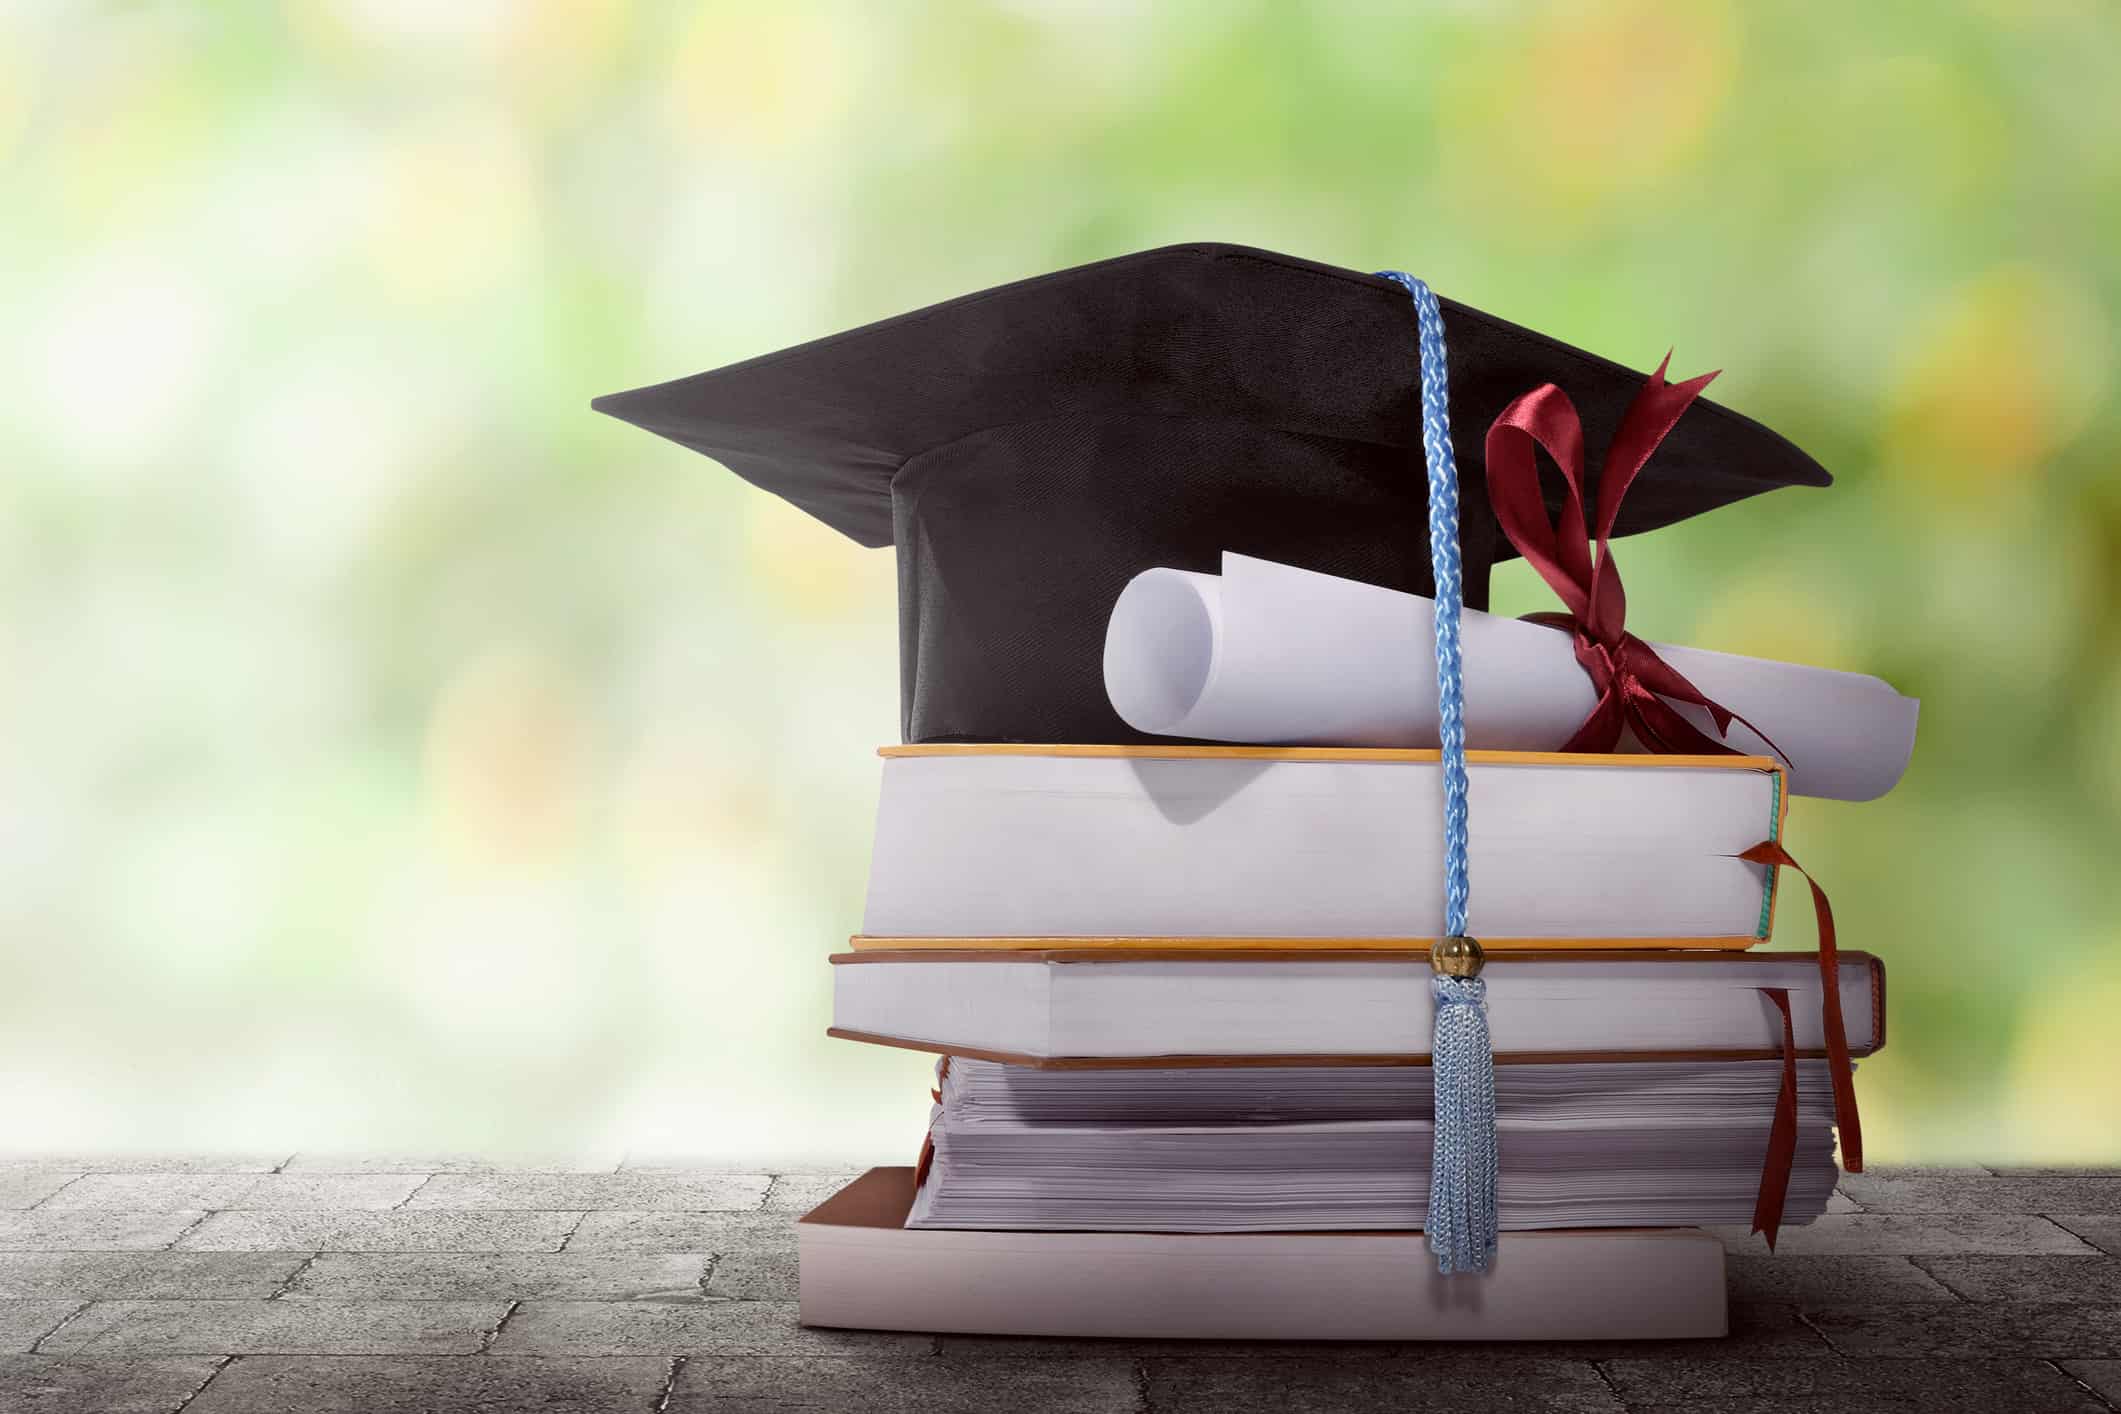 Graduaciones universitarias crecieron al menos un 10% en los últimos años